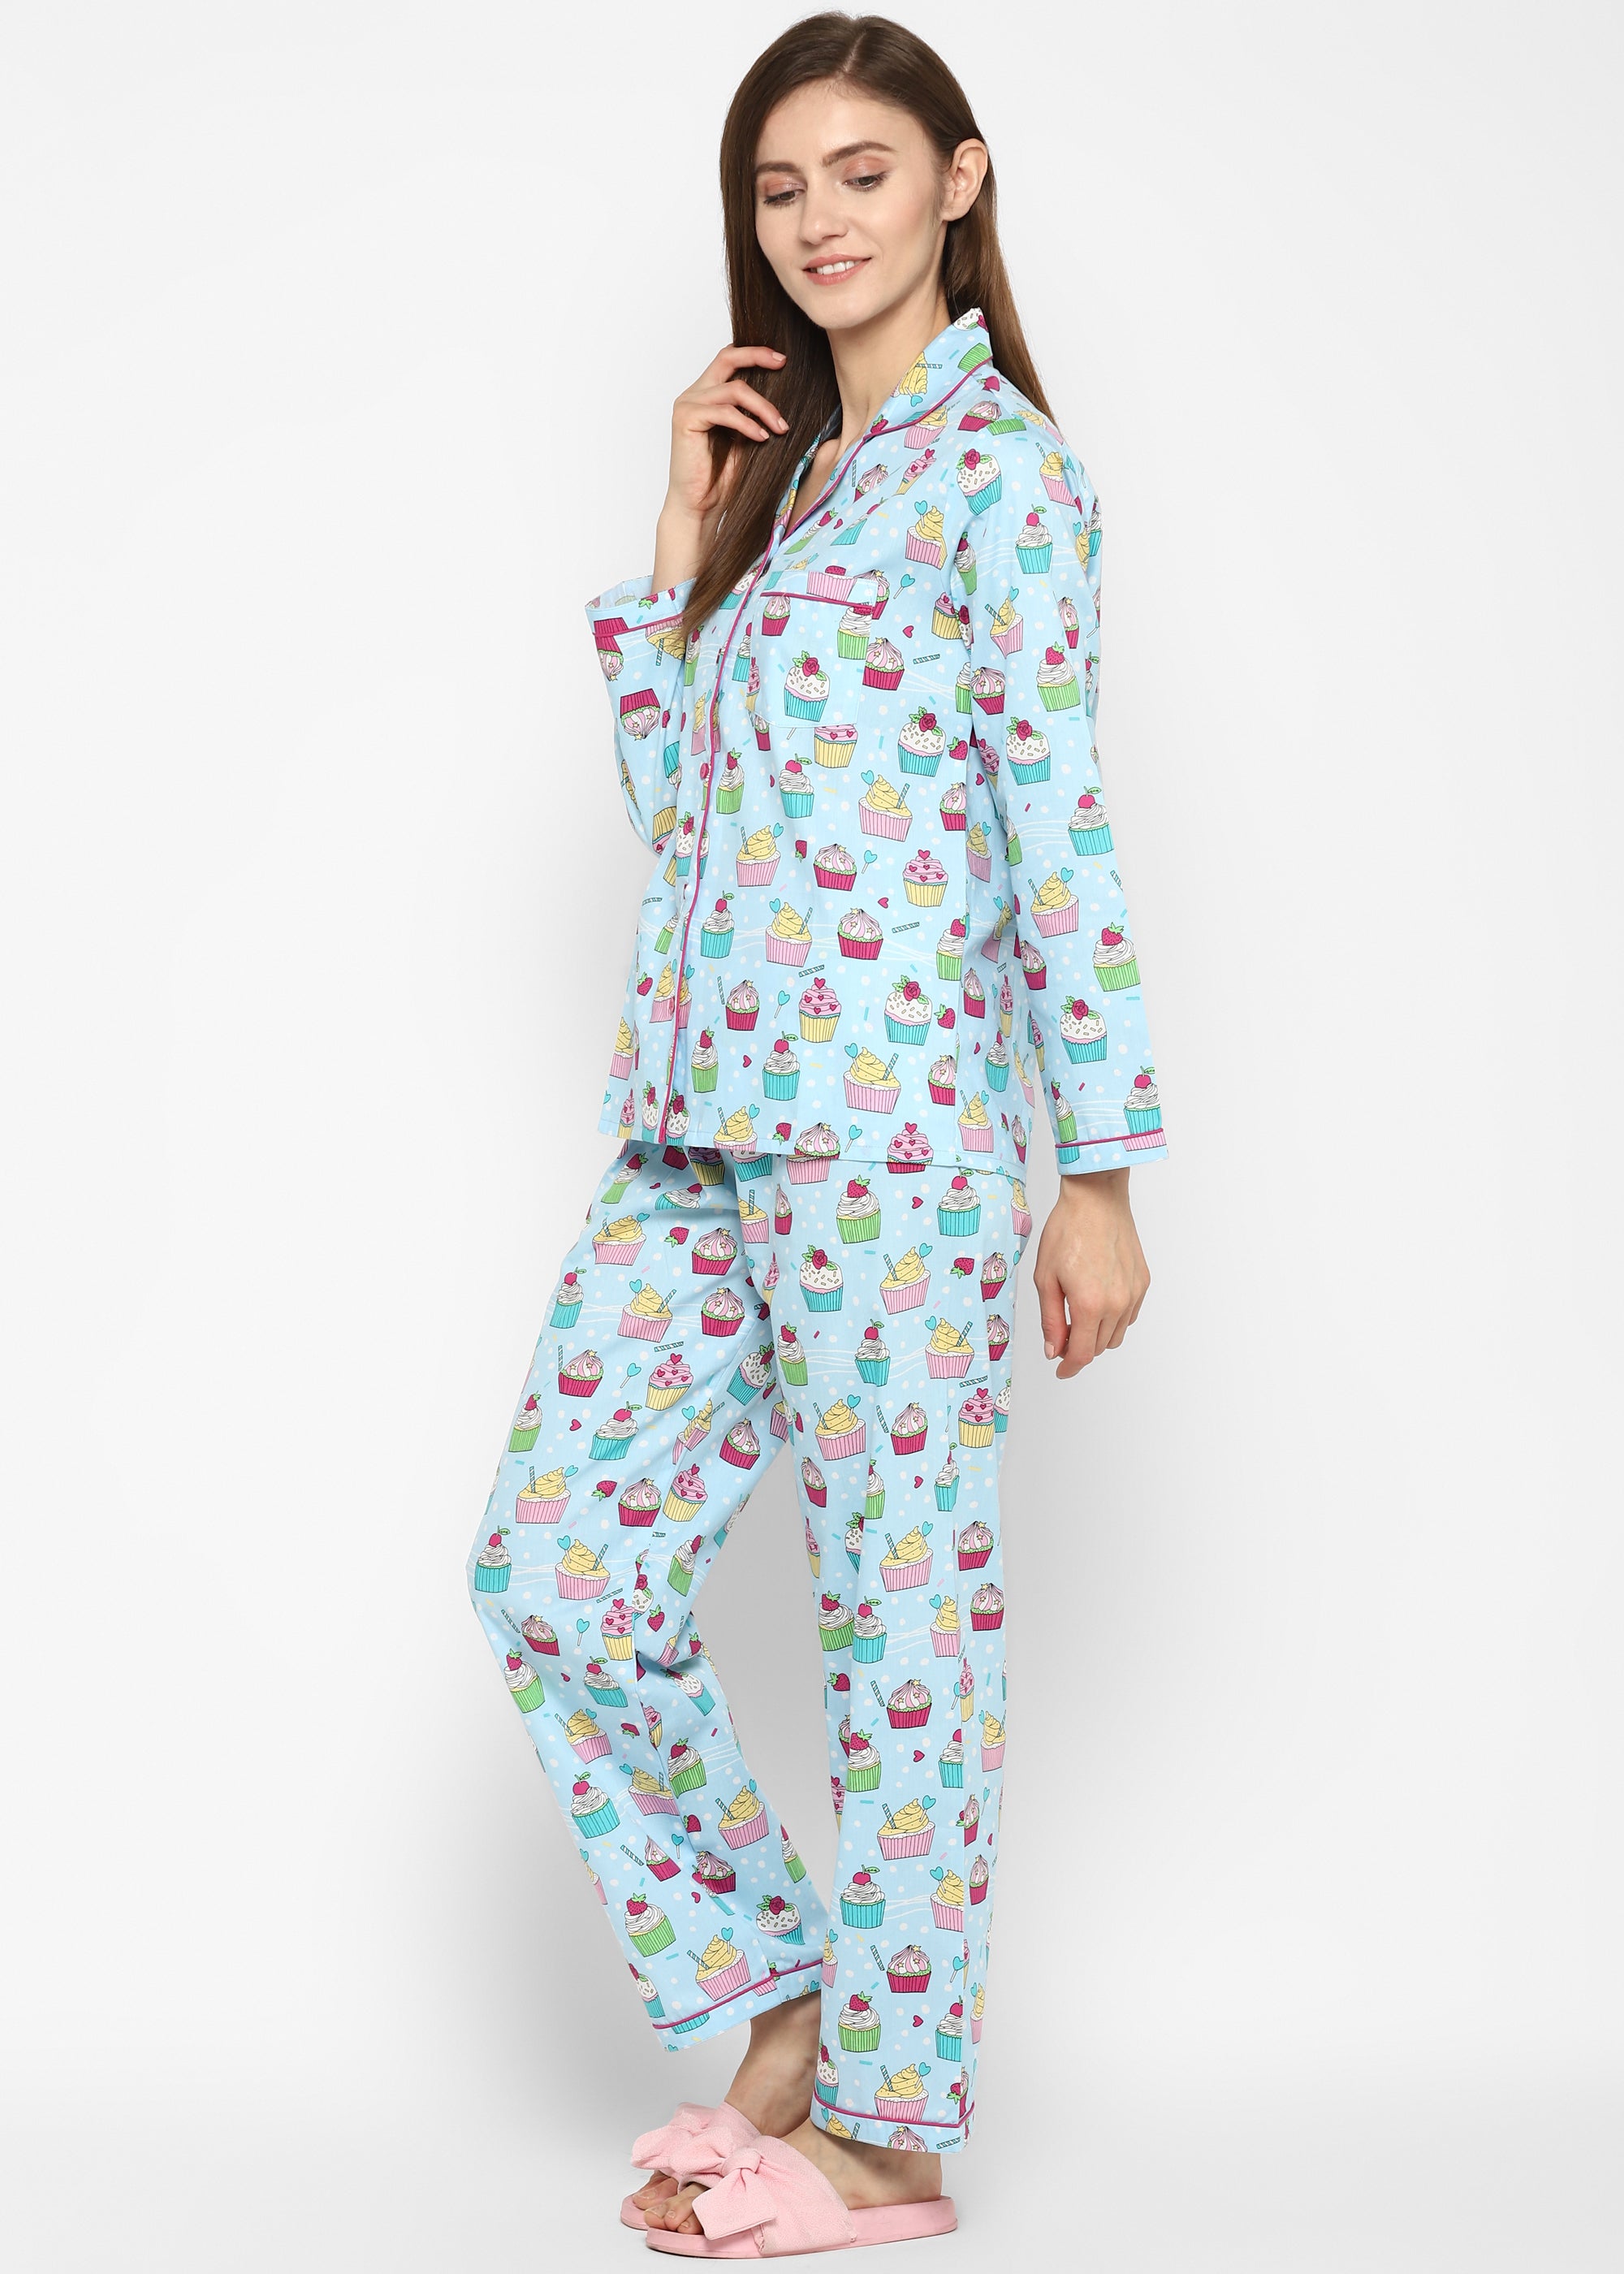 Cupcake Sprinkles Print Long Sleeve Women's Night Suit - Shopbloom